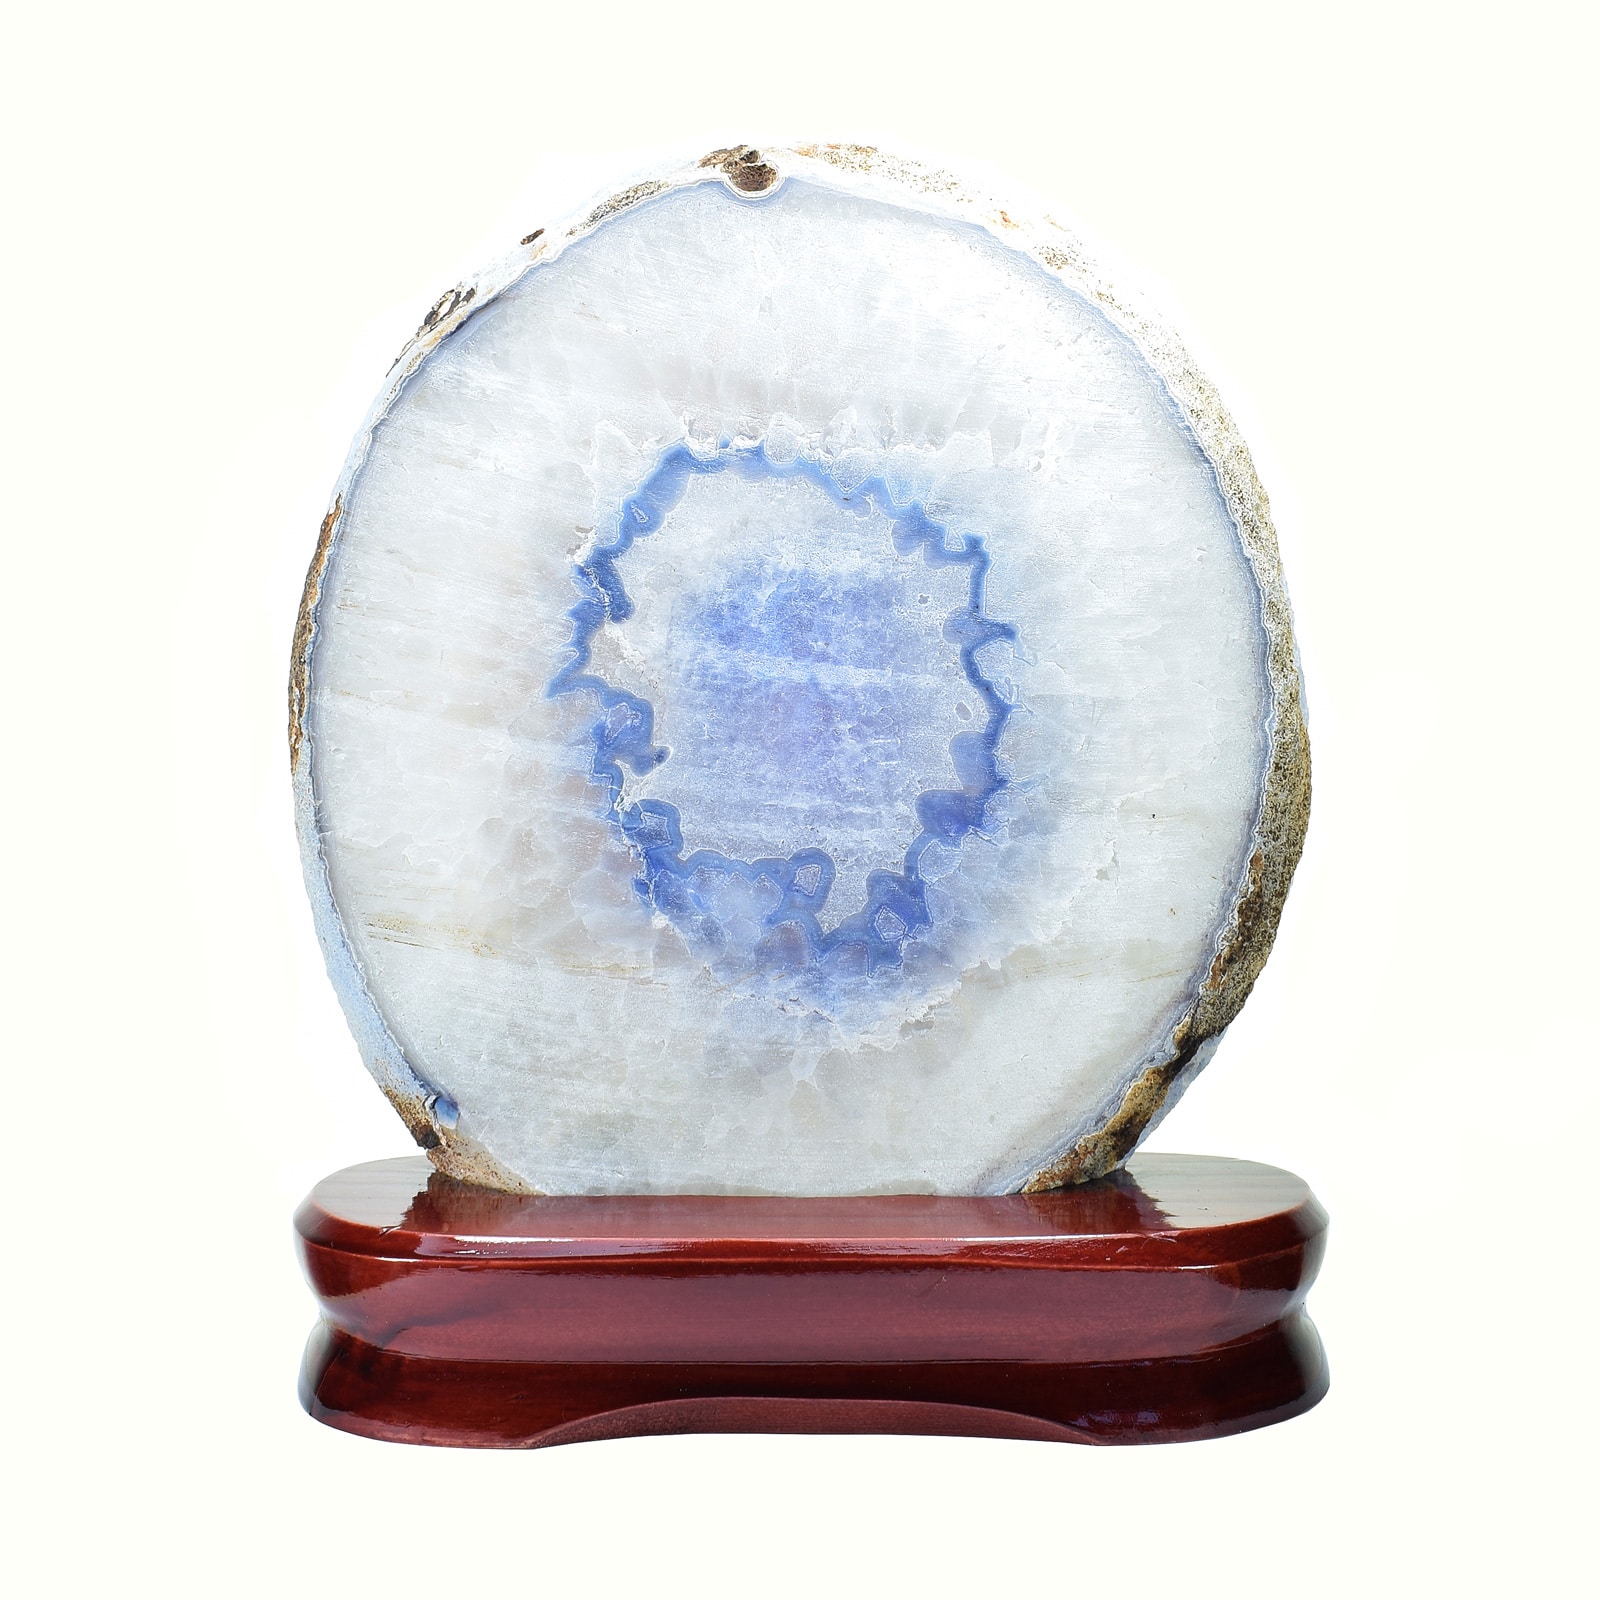 Φέτα από Αχάτη με κρύσταλλα χαλαζία, τοποθετημένη σε ξύλινη βάση. Ο Αχάτης είναι γυαλισμένος στις δύο όψεις του και έχει ύψος 20,5cm. Αγοράστε online shop.